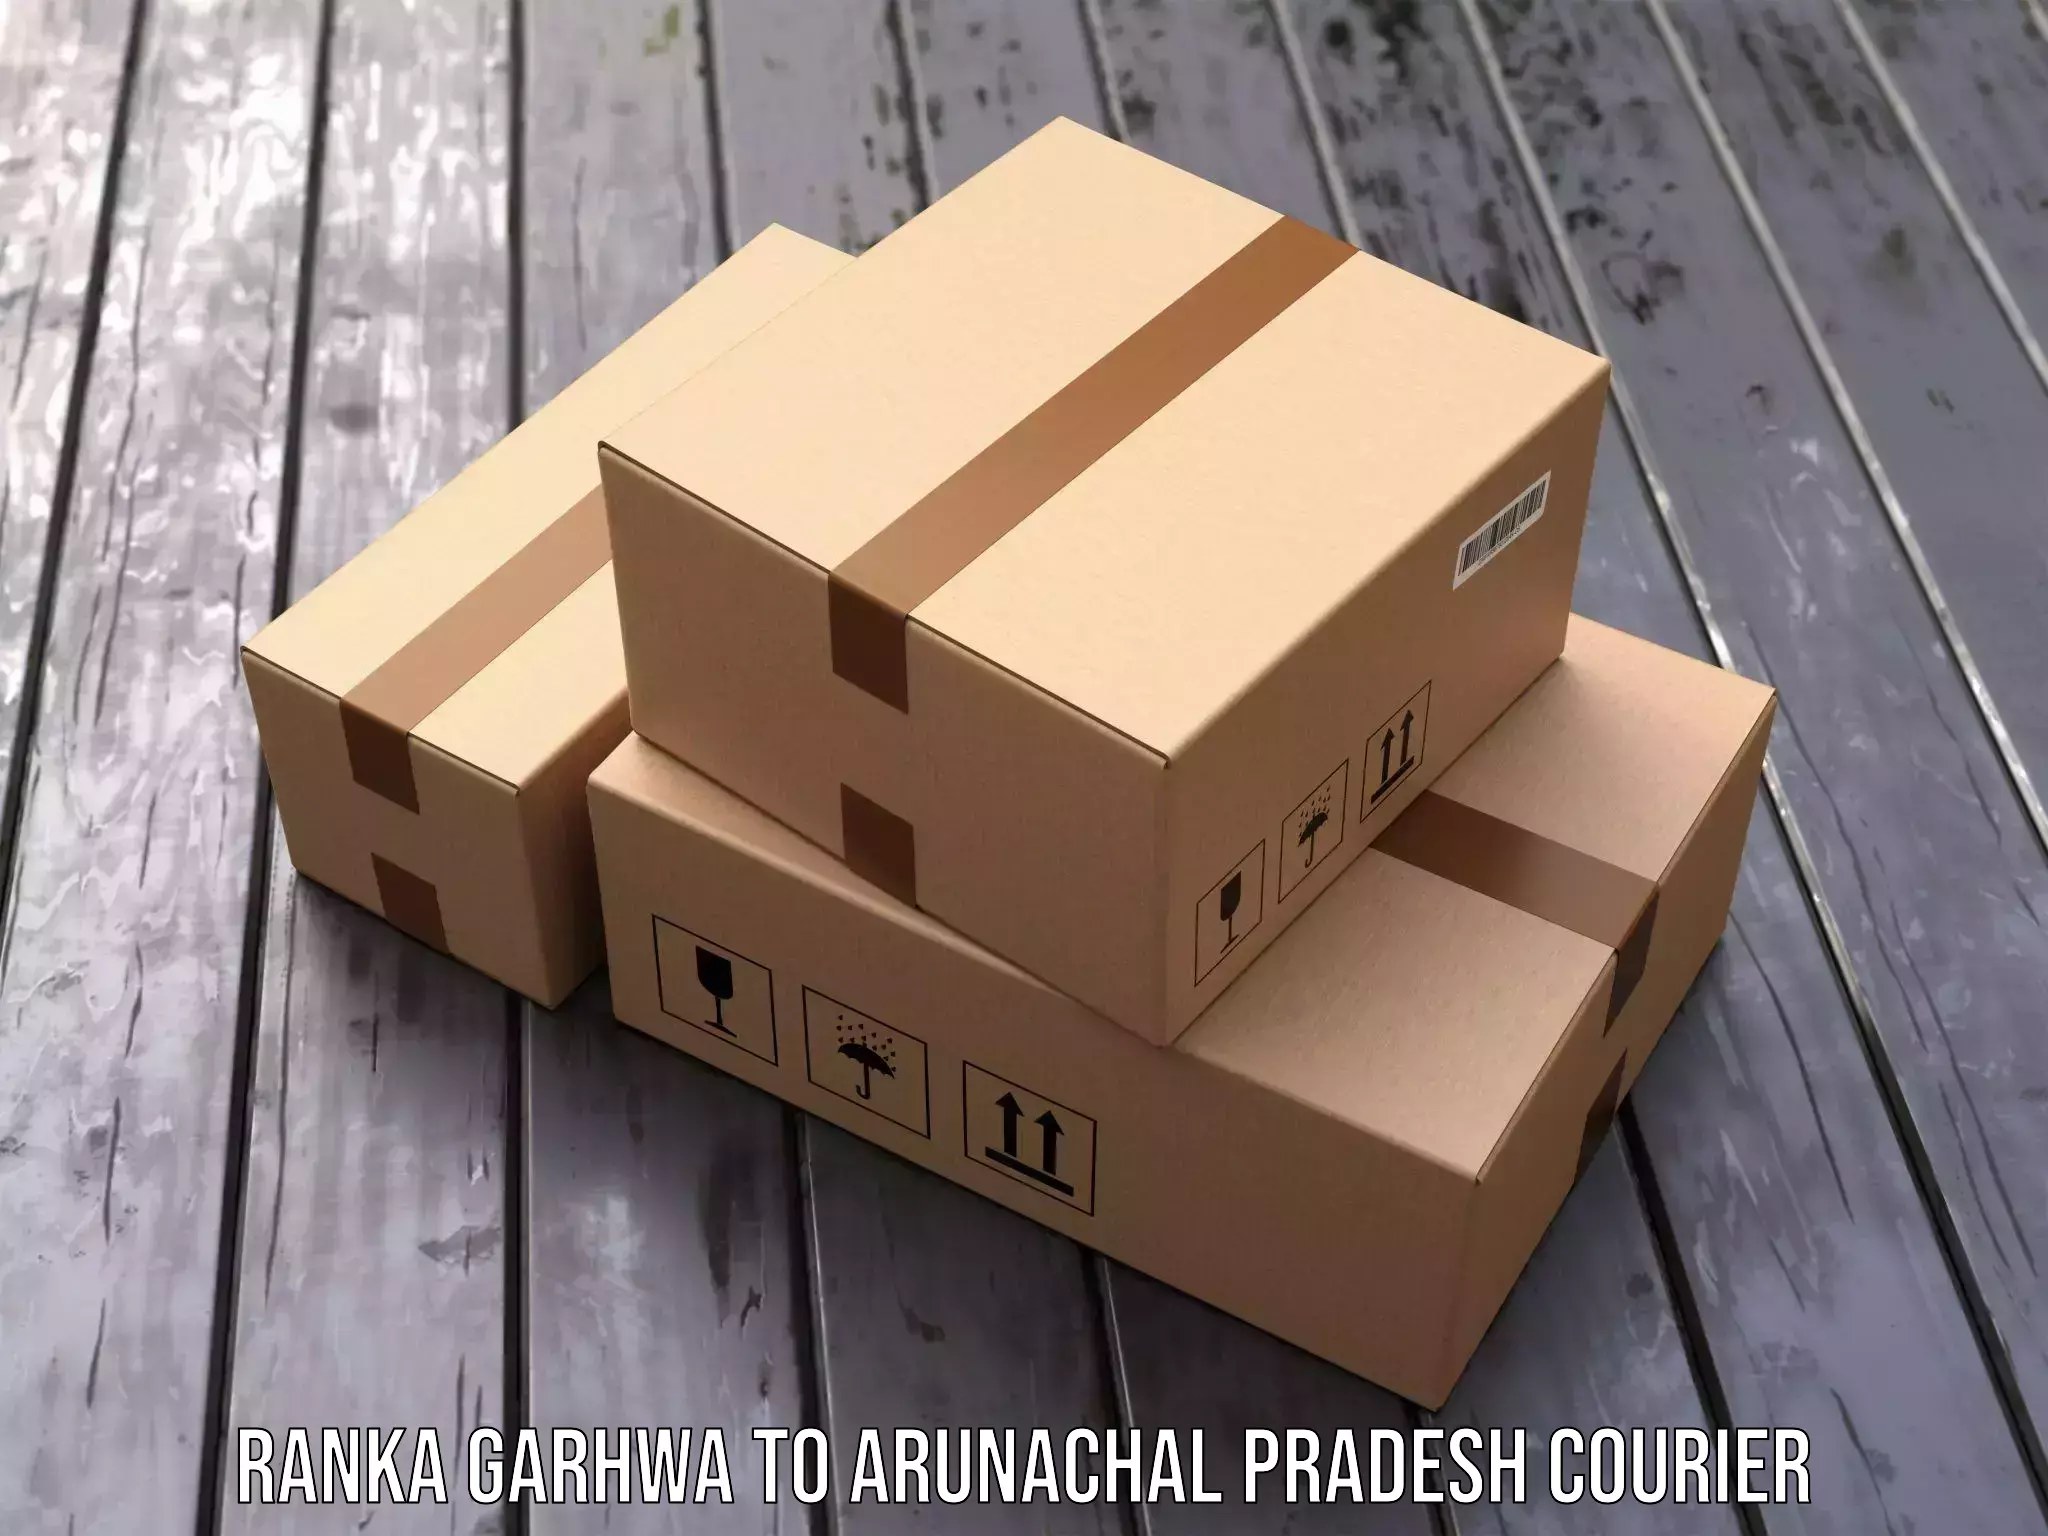 Efficient parcel service Ranka Garhwa to Itanagar